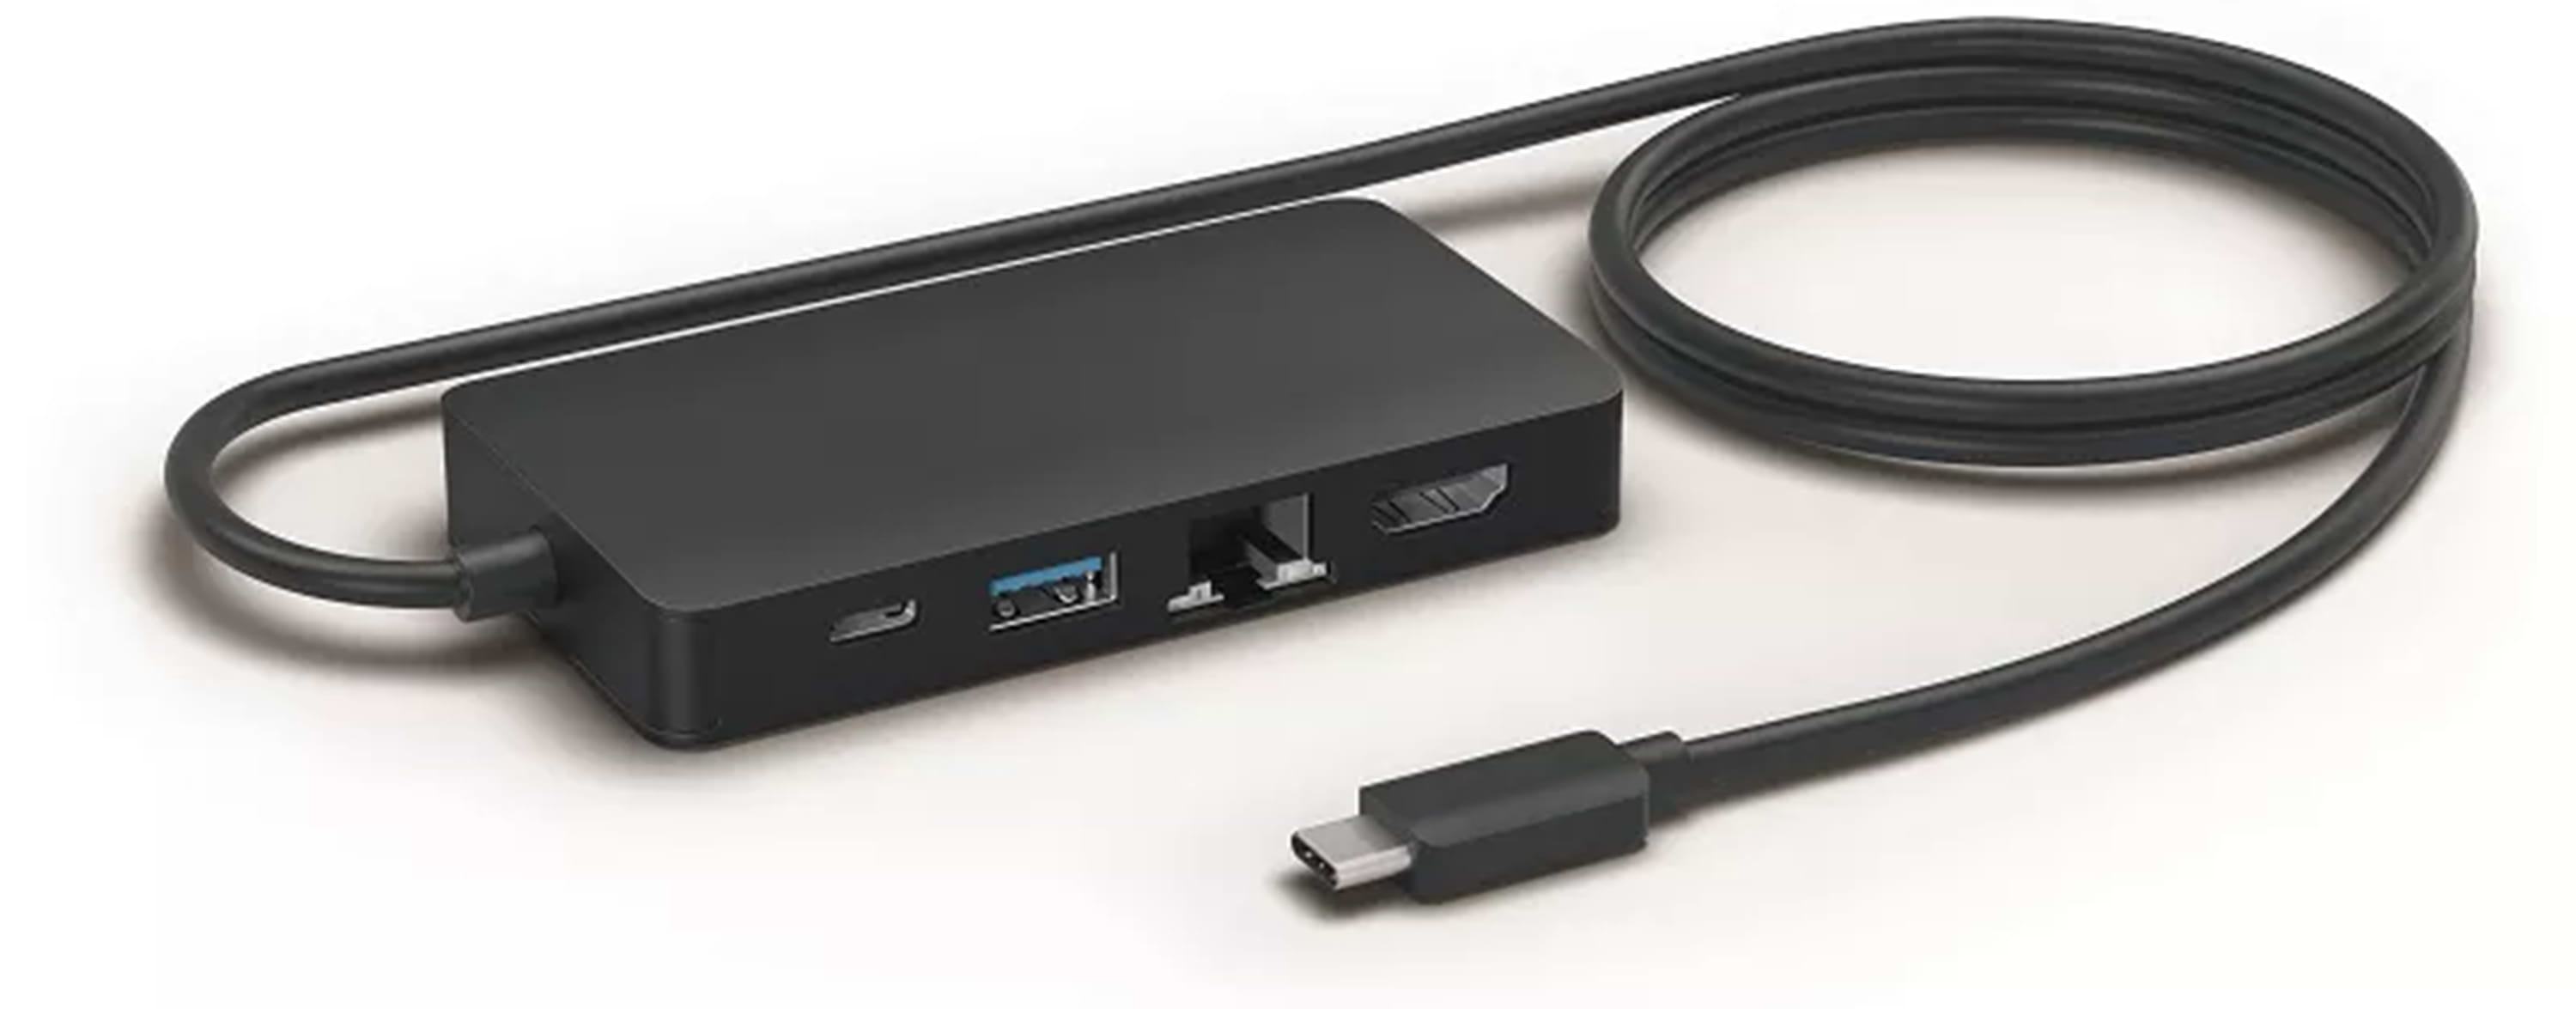 מפצל USB למצלמת הרשת Panacast מבית Jabra דגם PanaCast USB Hub USB-C - צבע שחור שנתיים אחריות ע"י היבואן הרשמי